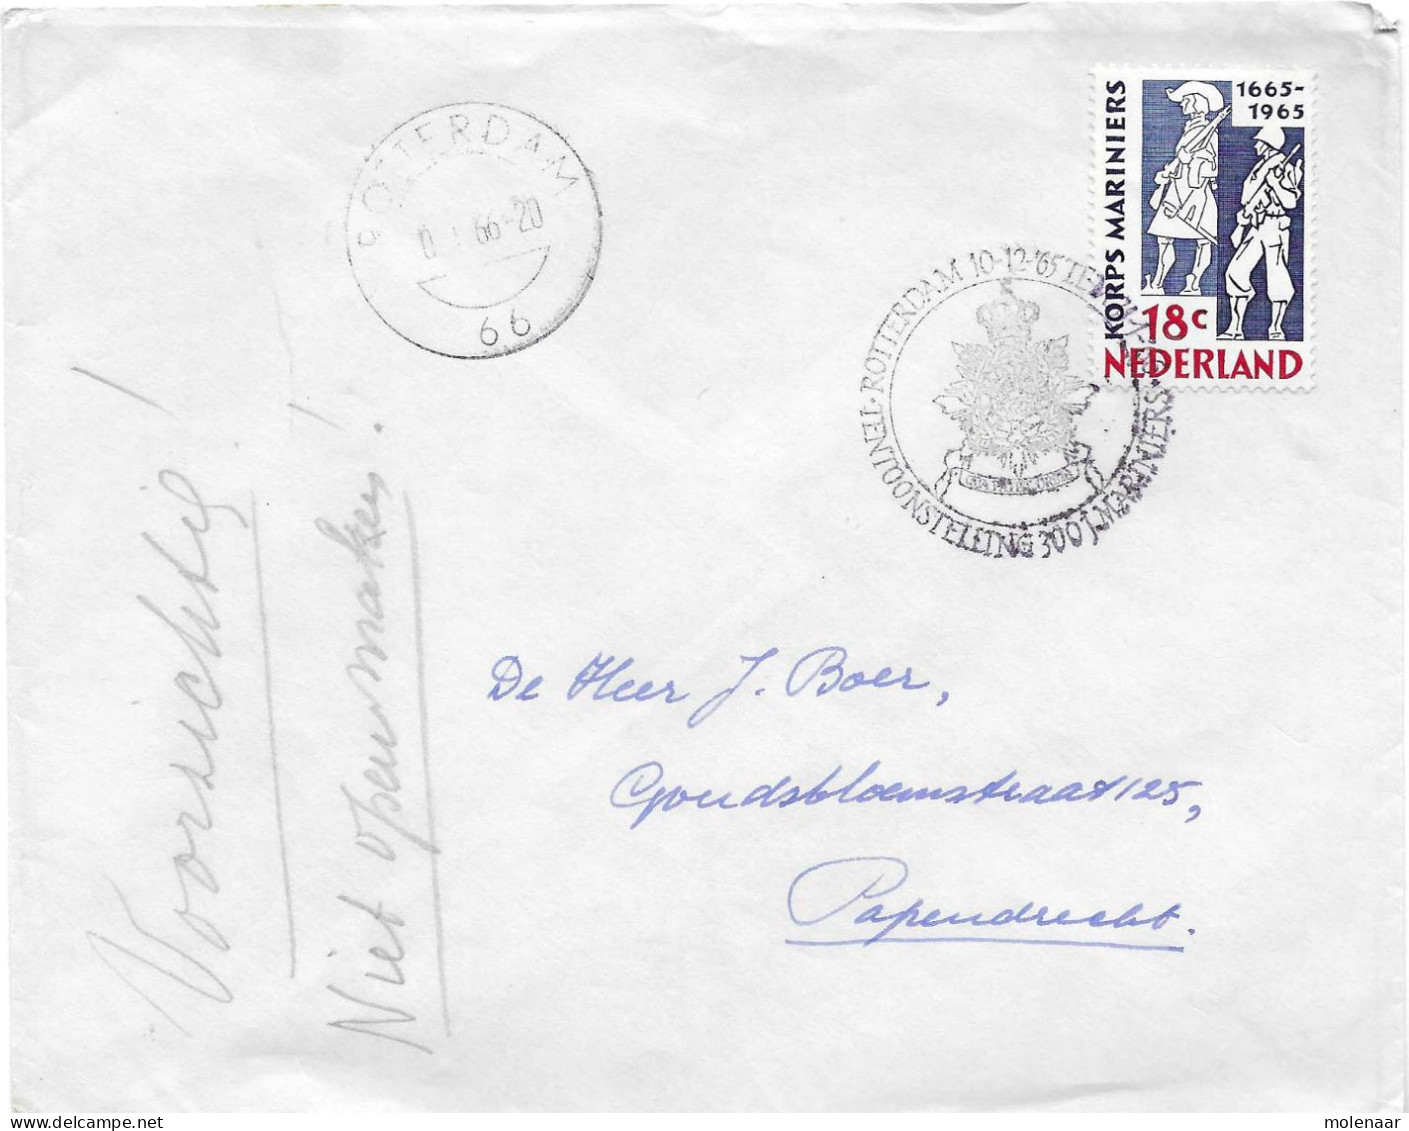 Postzegels > Europa > Nederland > Periode 1949-1980  > 1960-69 > Brief Uit 1965 100 Jaar Korps Mariniers (17716) - Briefe U. Dokumente